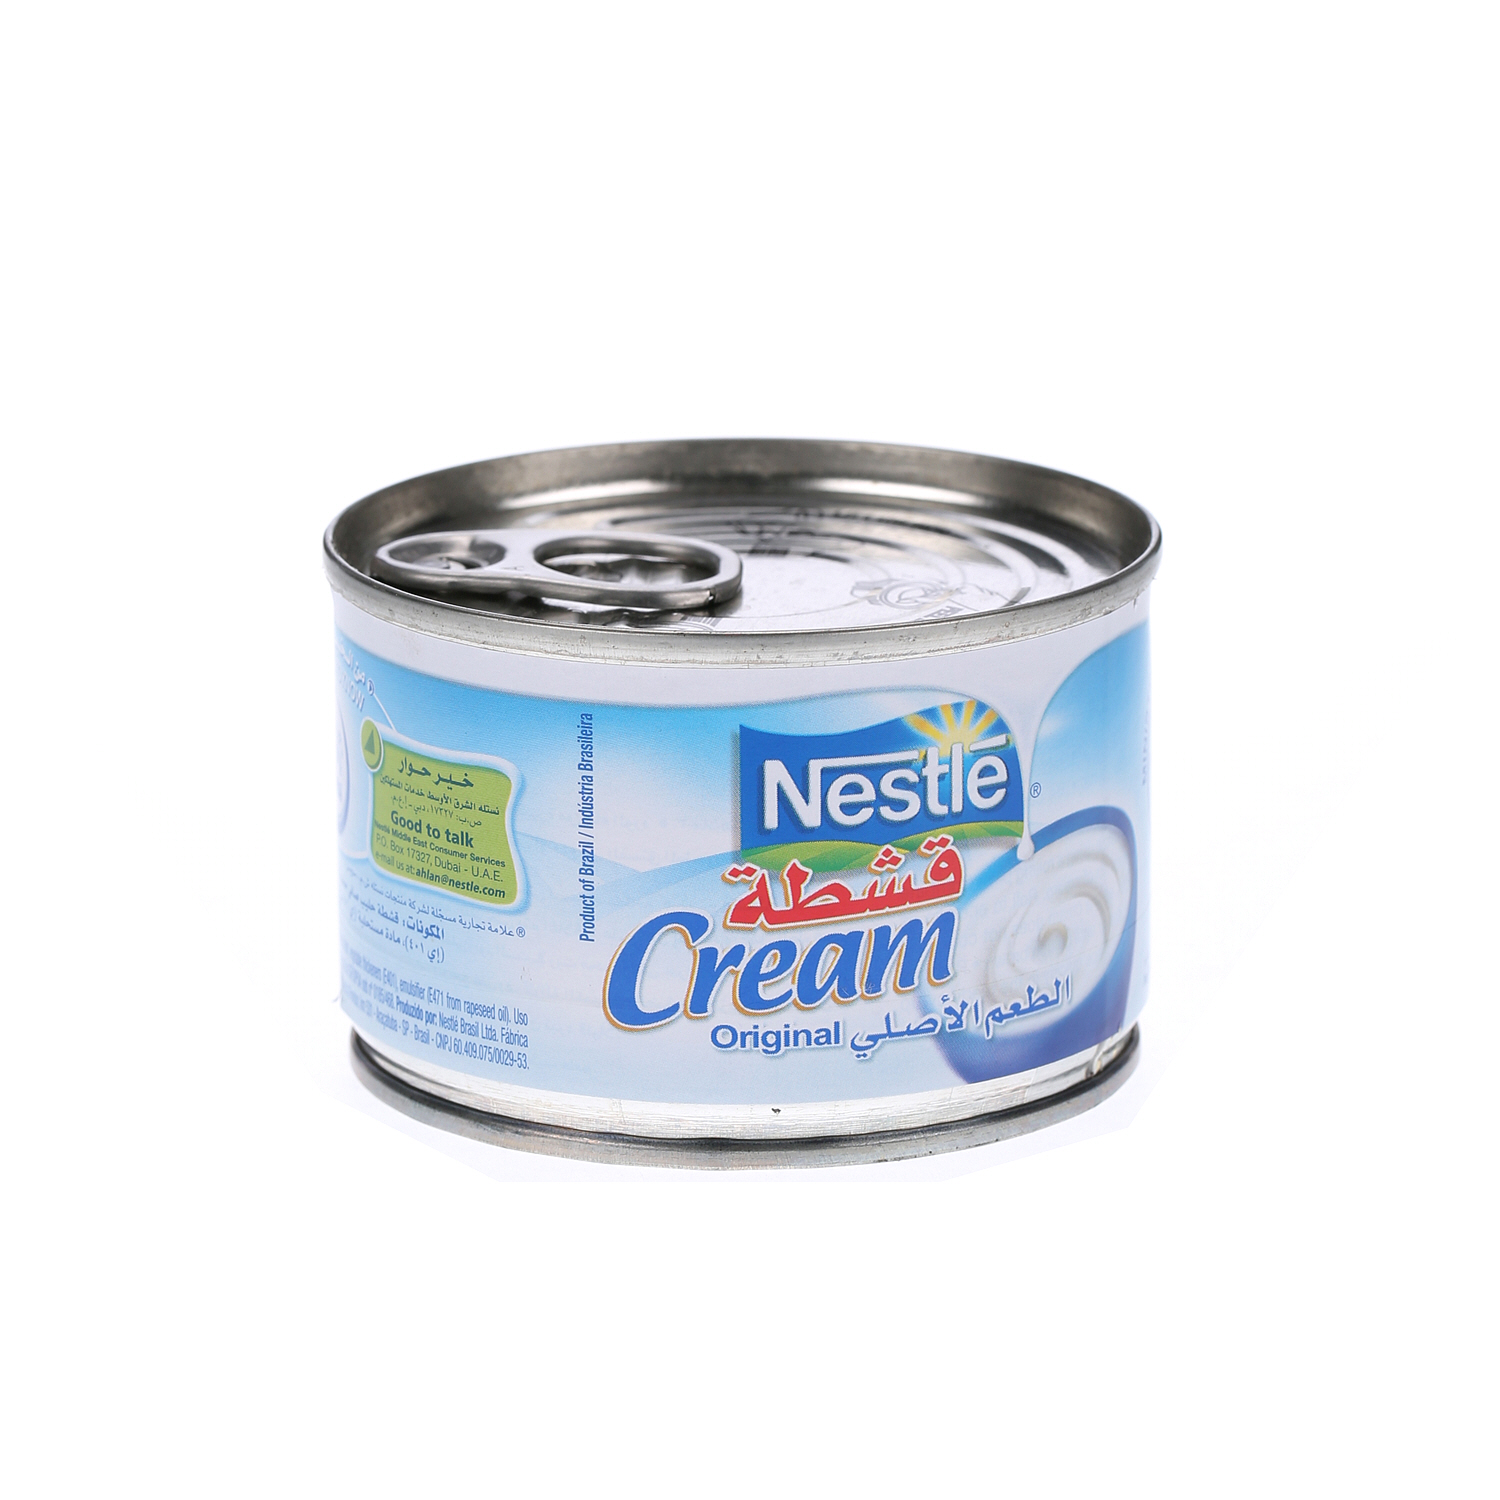 Nestlé Cream Original 160gm